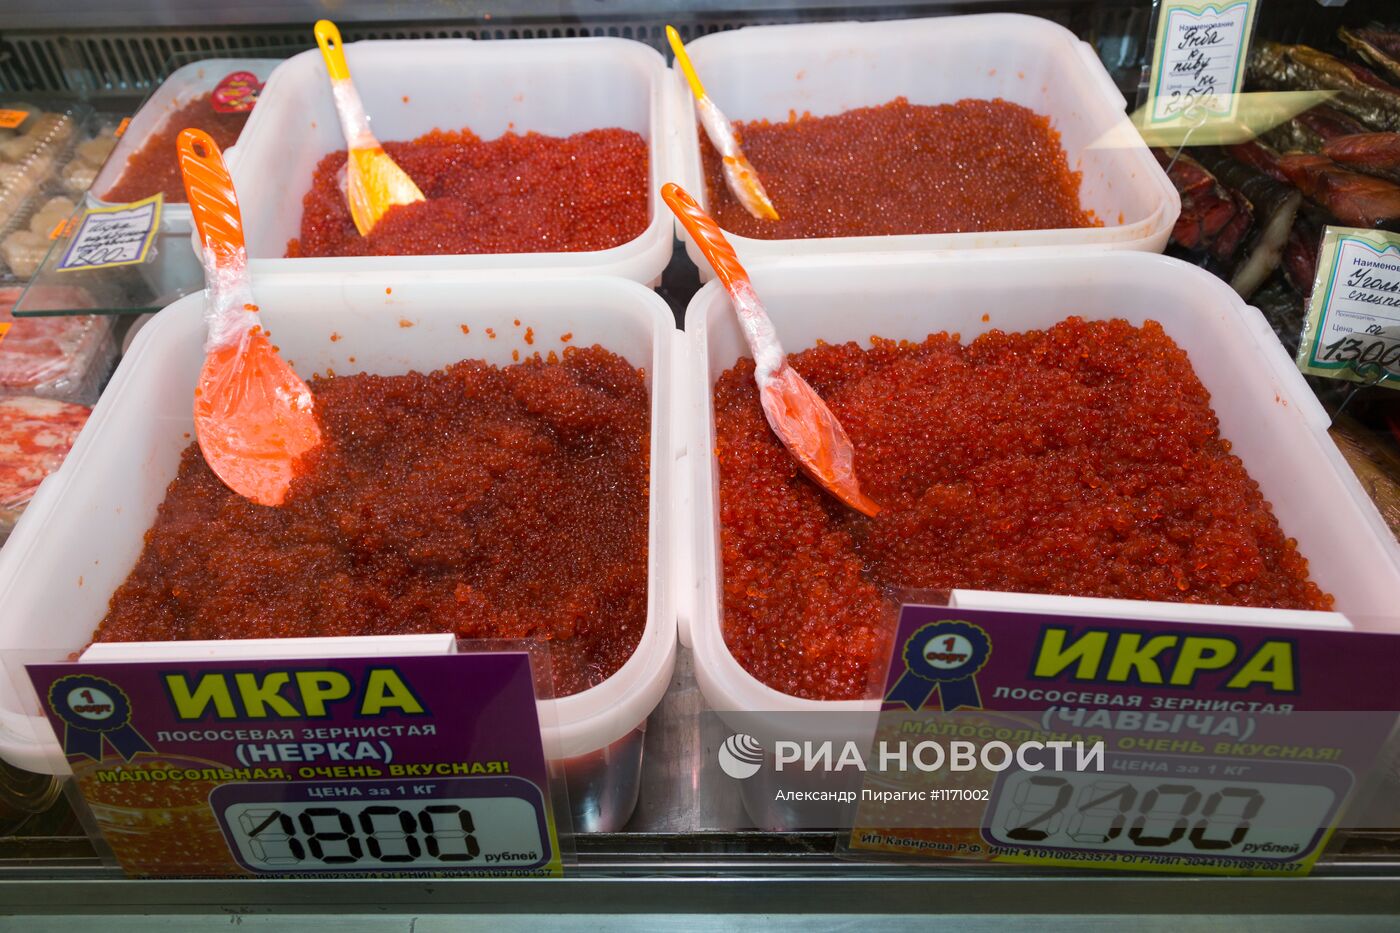 Продажа морепродуктов на рынке ОАО ОБ "Камчатпромтовары"